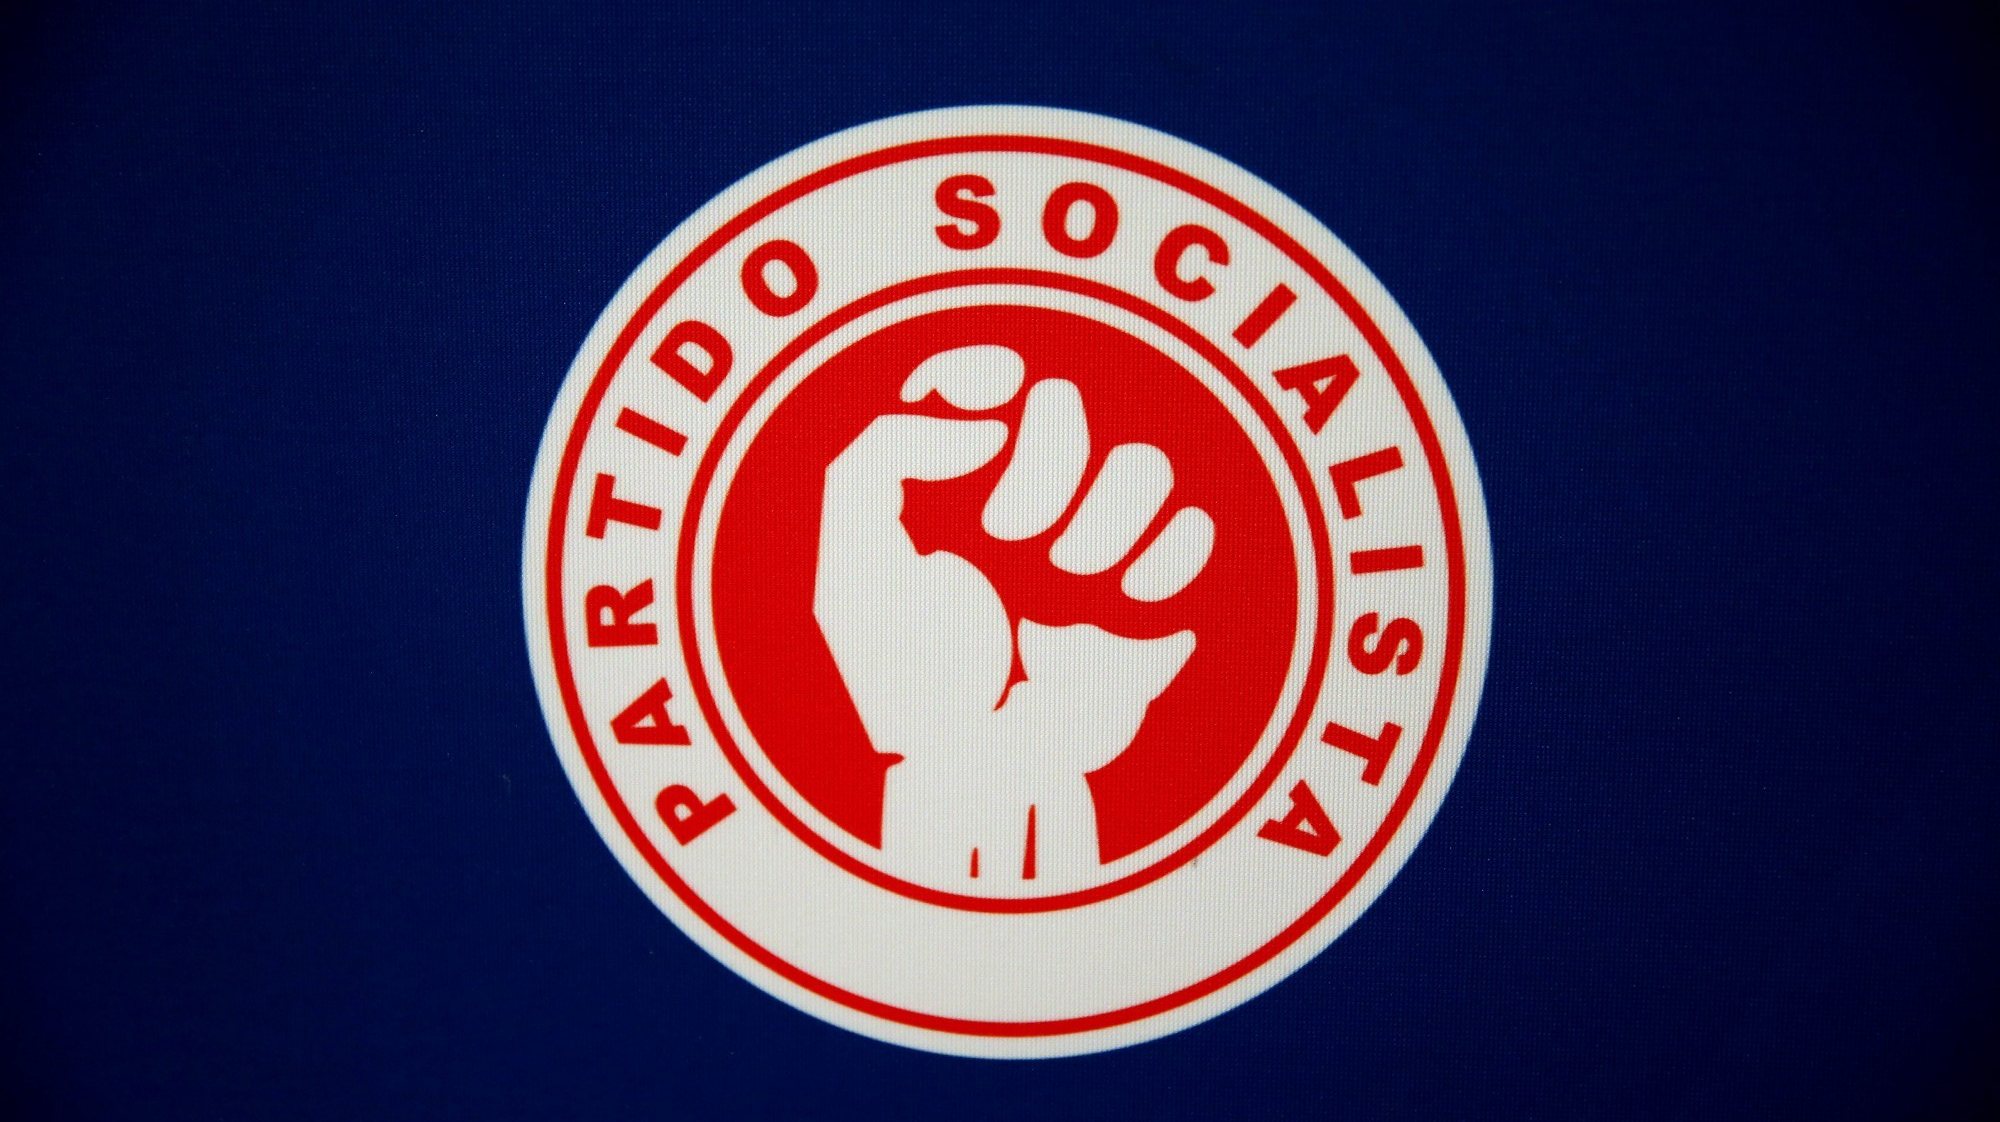 Os militantes, simpatizantes registados e membros da Juventude Socialista estão ainda eleger cerca de 1300 delegados ao Congresso Nacional do PS